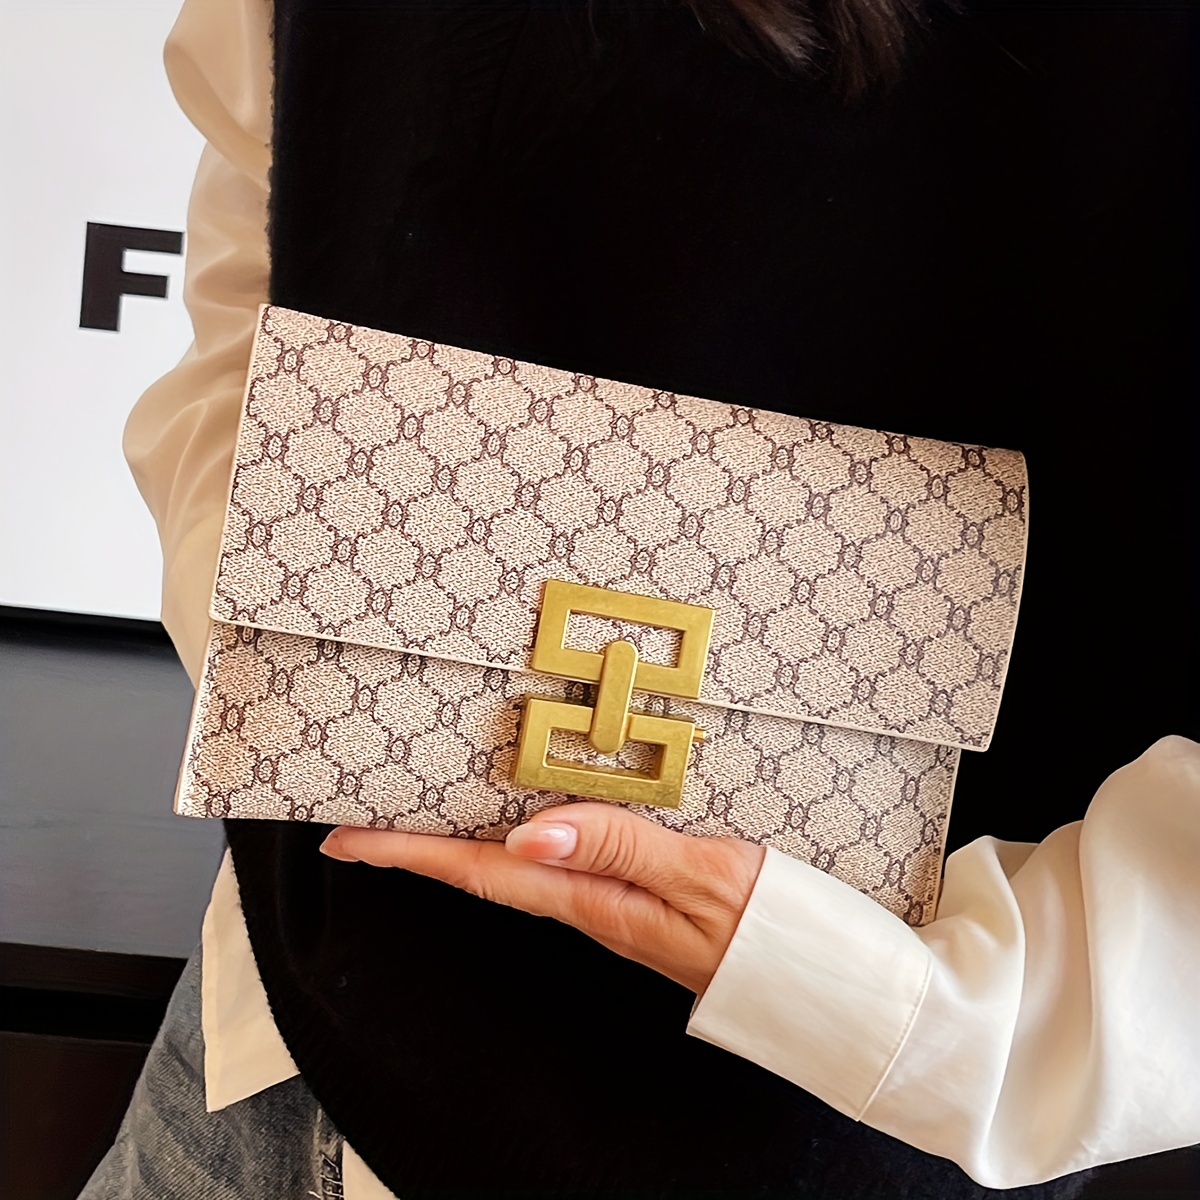 Las mejores ofertas en Bolsas de Embrague Blanco Louis Vuitton y bolsos  para Mujer